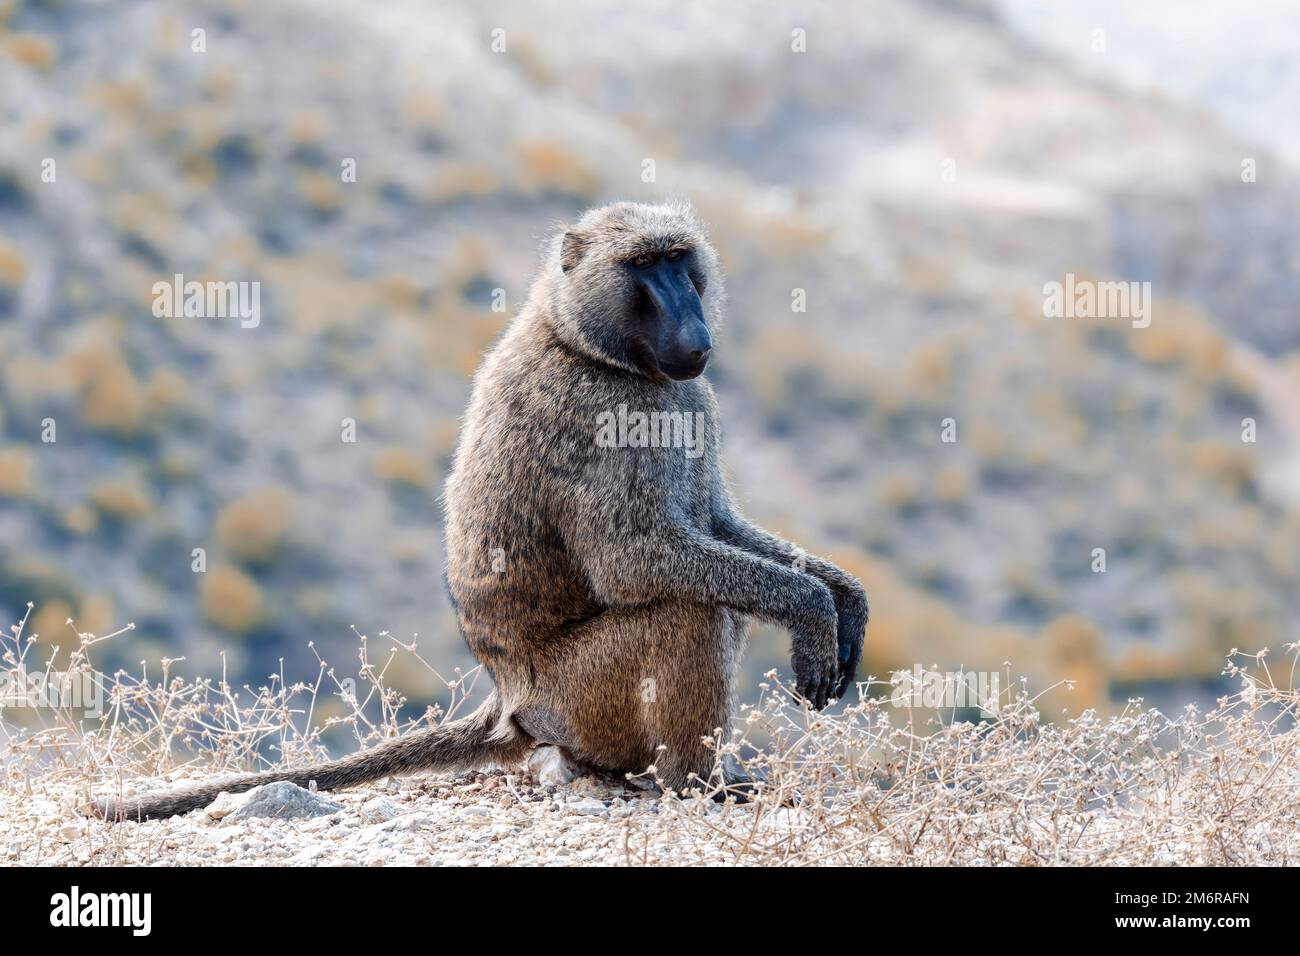 Chacma baboon, Ethiopia, Africa wildlife Stock Photo